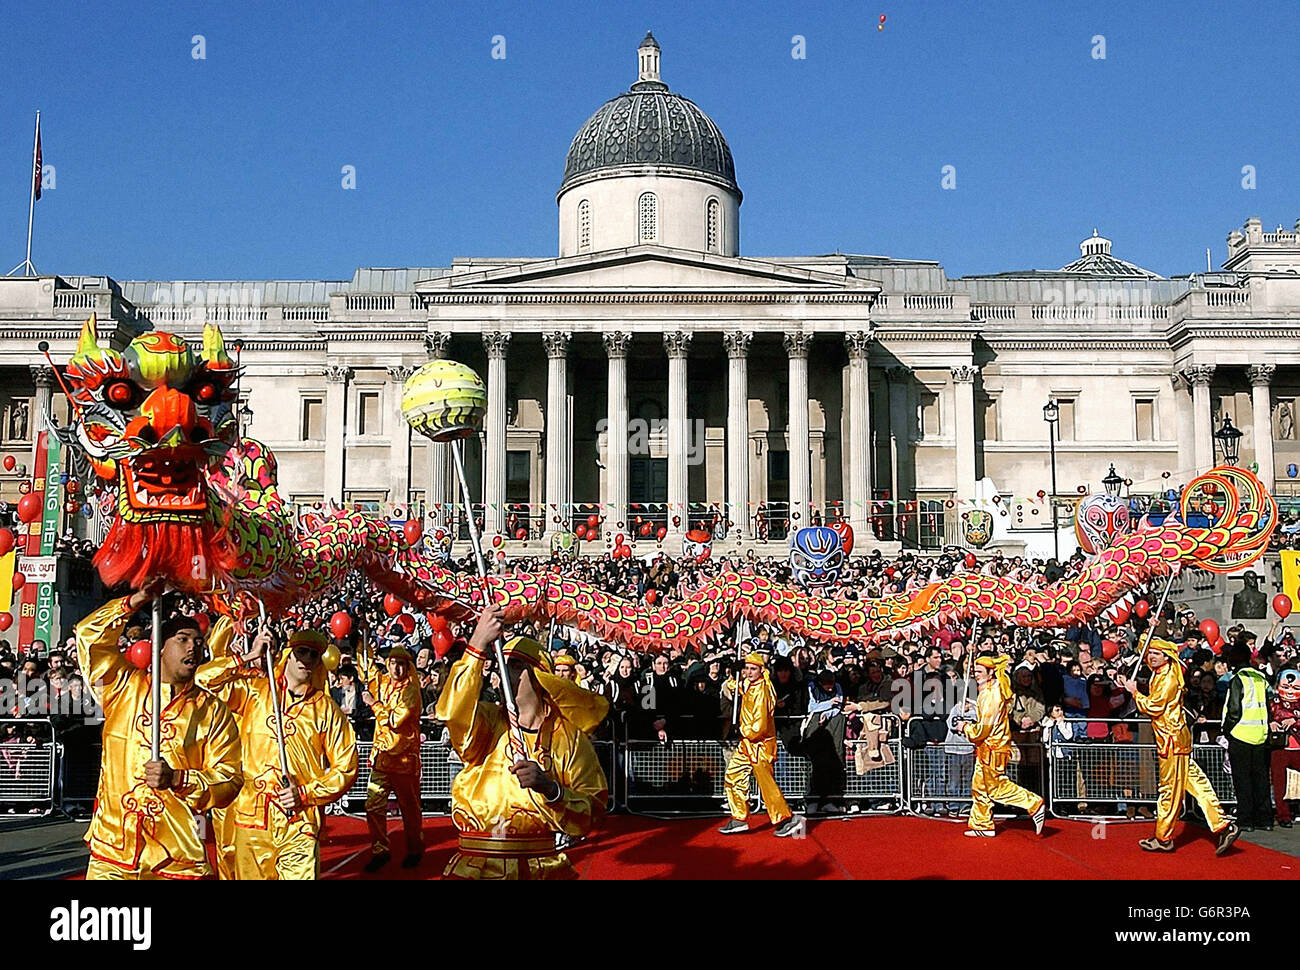 Un dragon est perlé à travers la place Trafalger.Un dragon est perlé pendant les célébrations du nouvel an chinois à Trafalgar Square à Londres. Banque D'Images